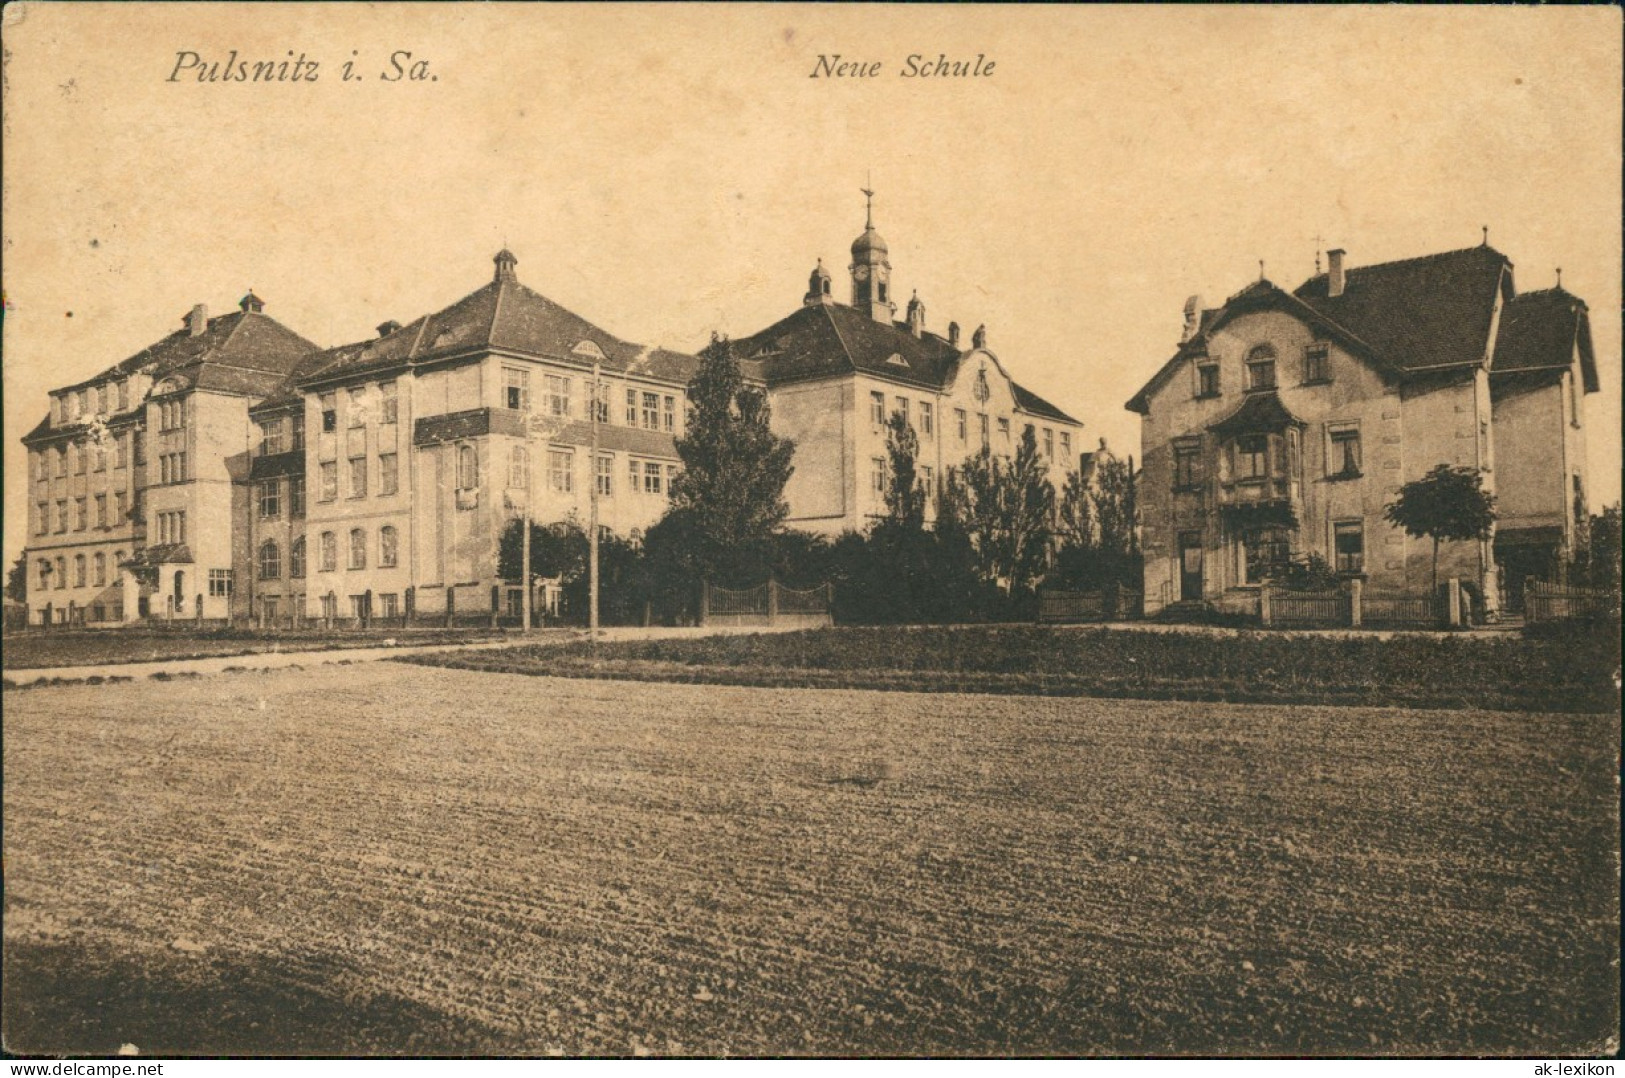 Ansichtskarte Pulsnitz Połčnica Neue Schule Straßen Ansicht 1921 - Pulsnitz